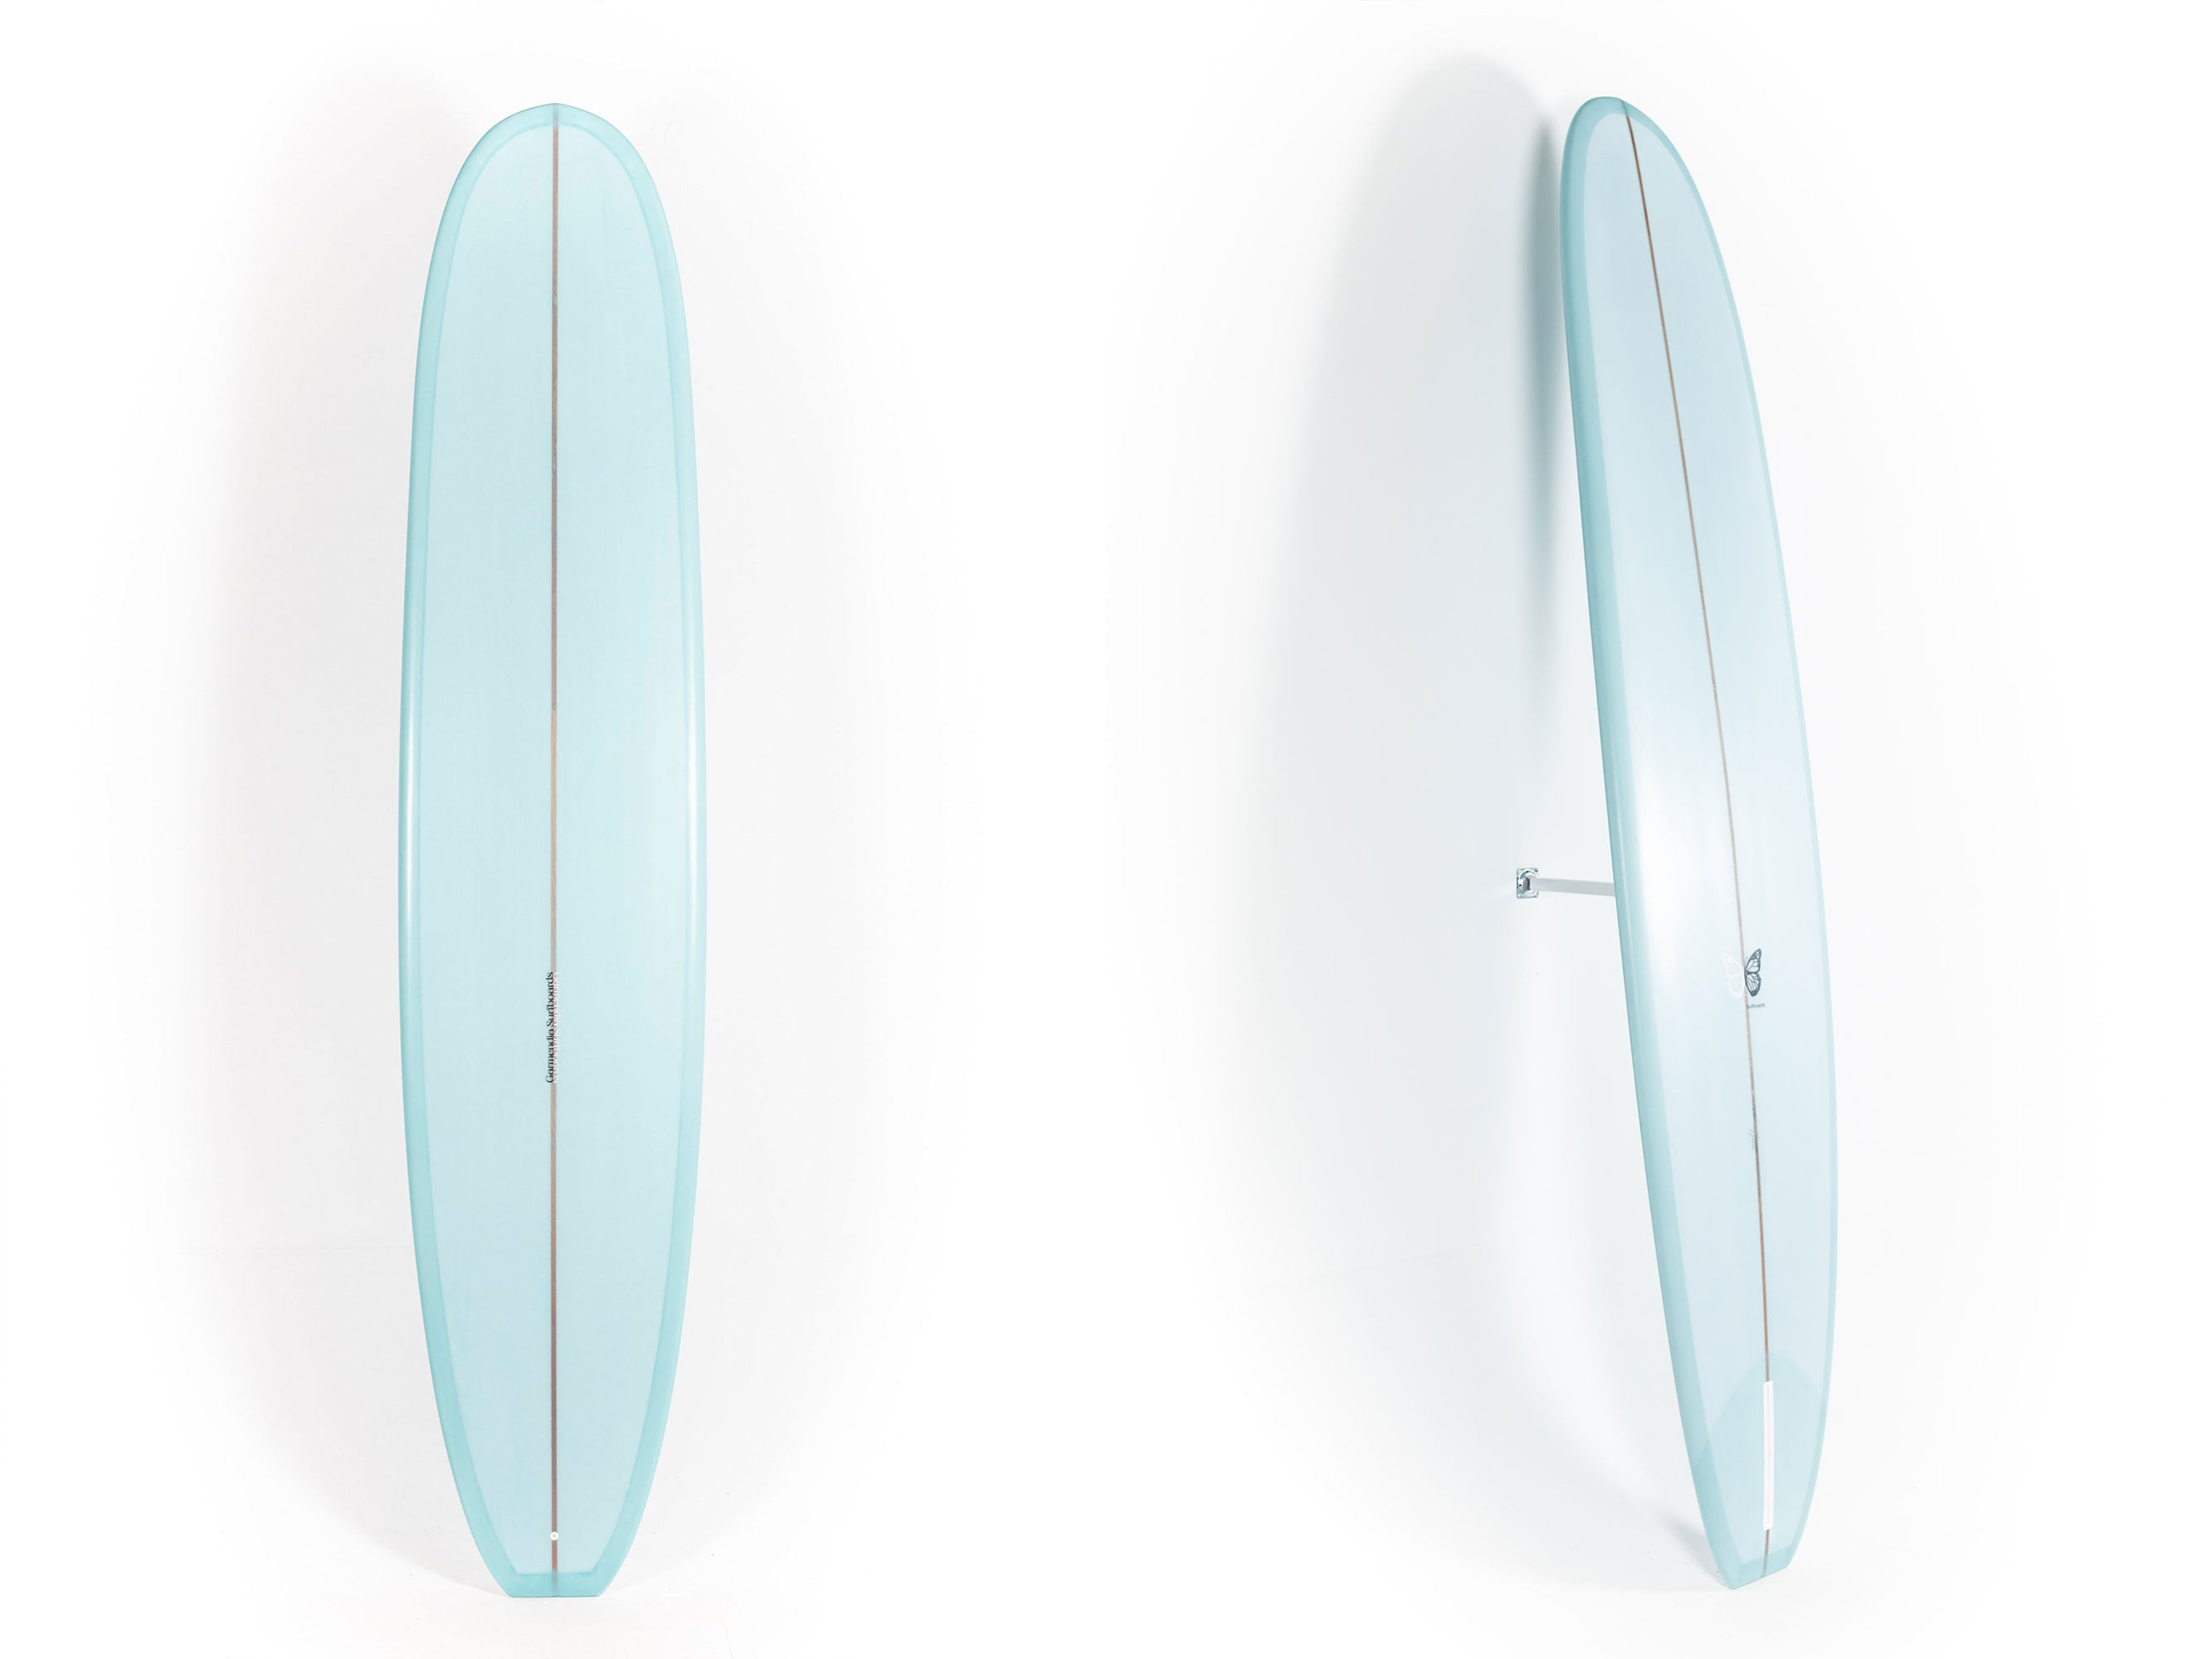 Garmendia Surfboards - NOSERIDER - 9'2" x 22 7/8 x 3- Ref:NOSERIDER92